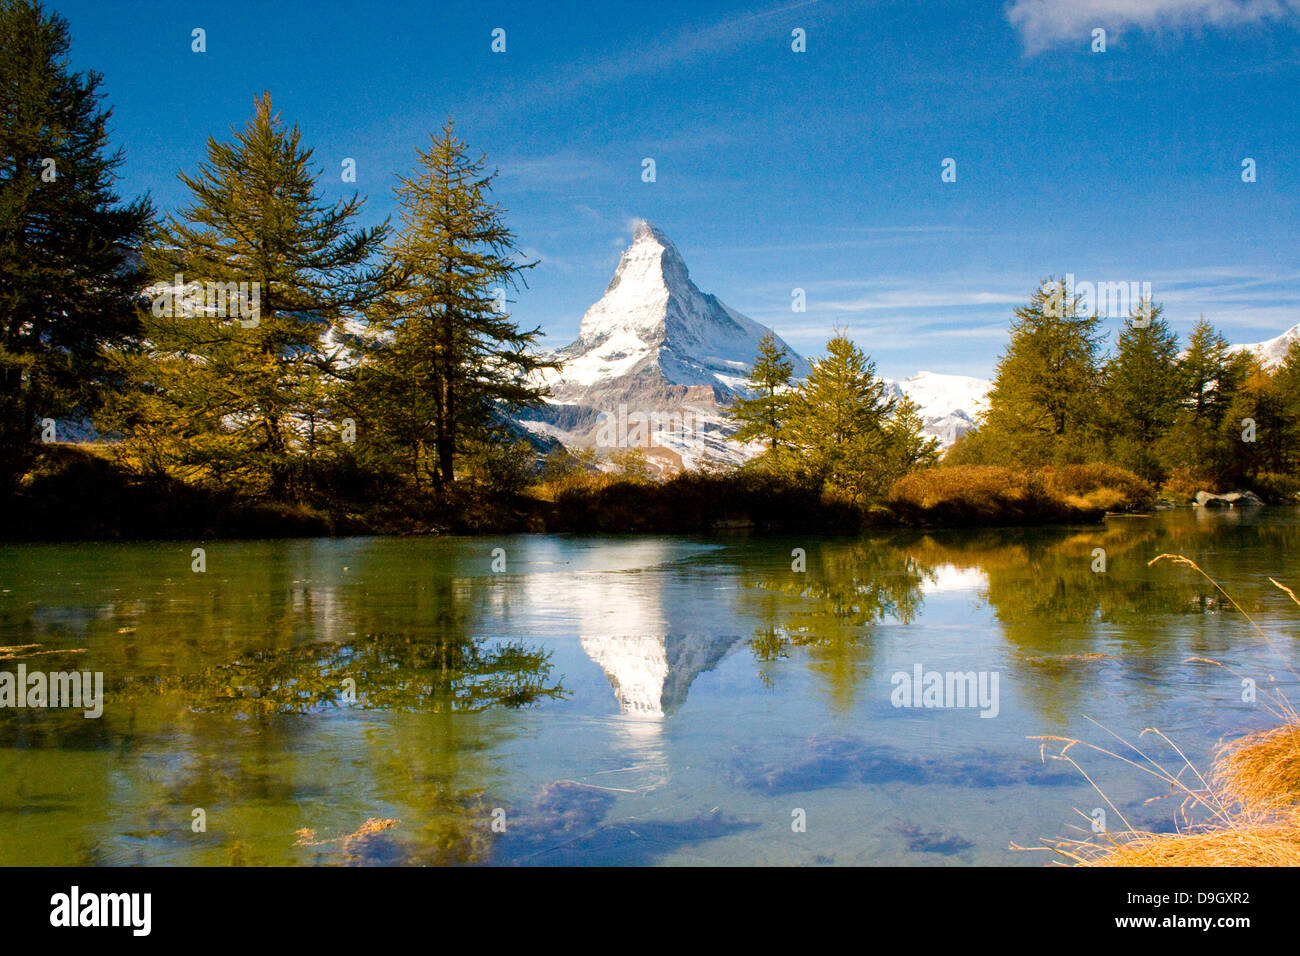 das Matterhorn spiegelt sich im teils vereistem Grindjesee; Matterhorn and its reflection in the partially frozen Grindjesee Stock Photo